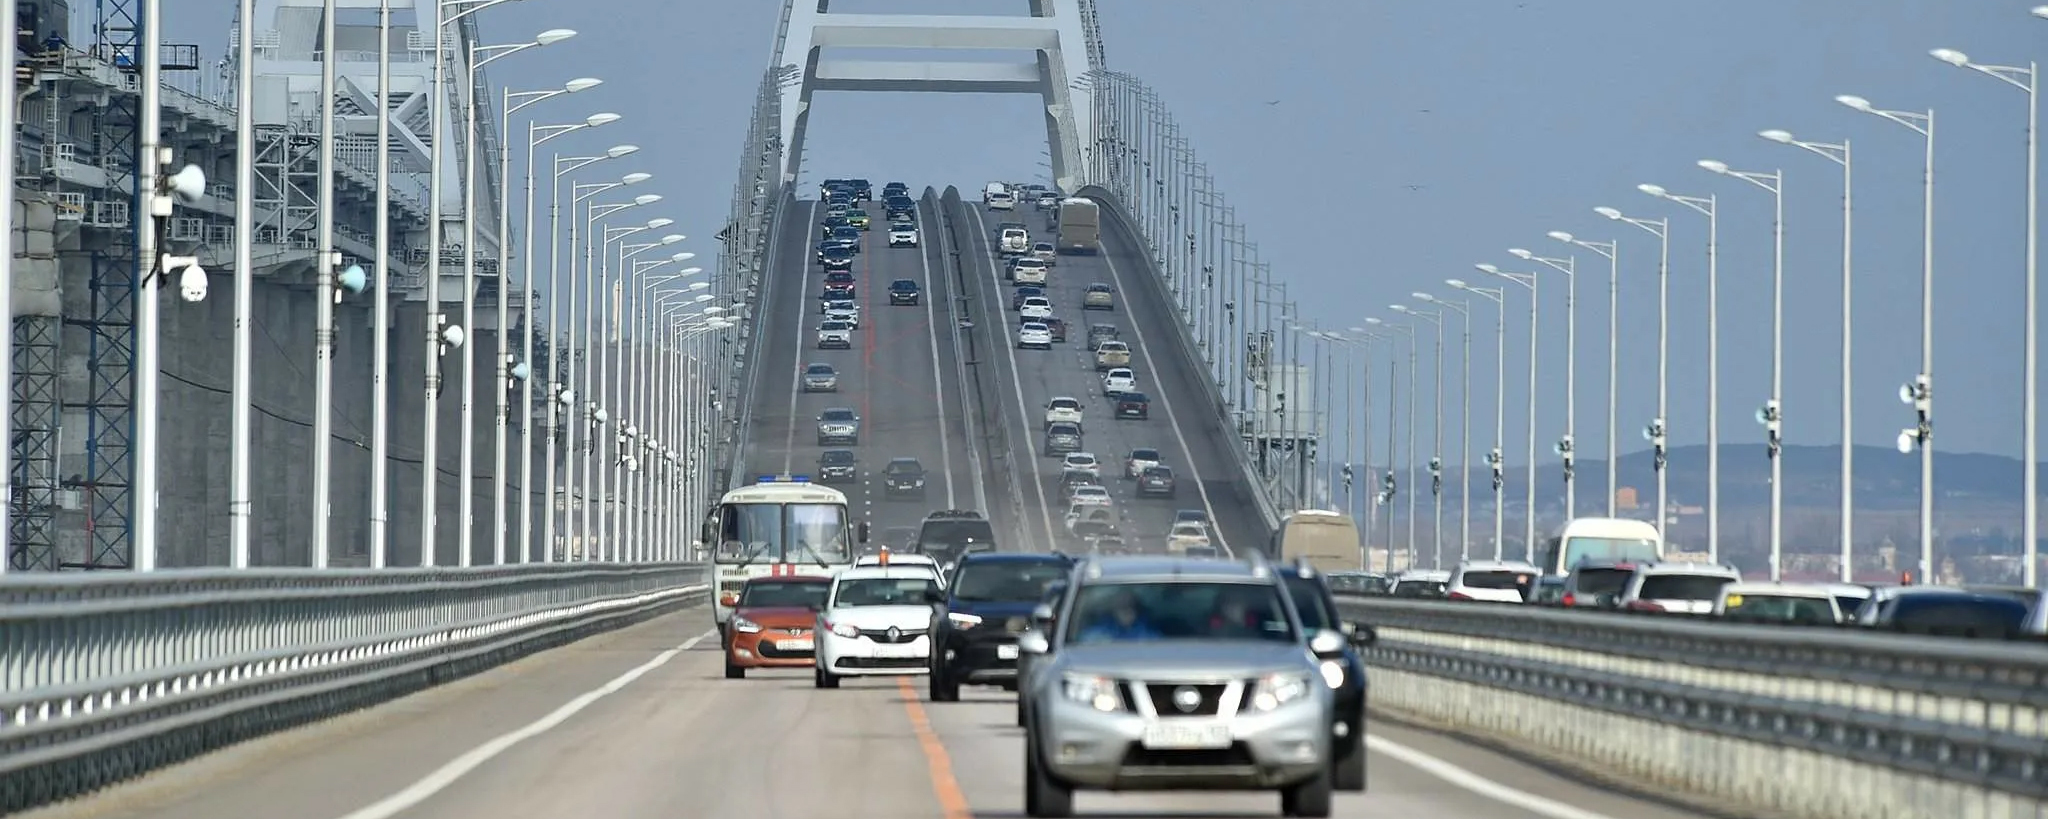 Крымский мост открыли через 3,5 часа после приостановки движения